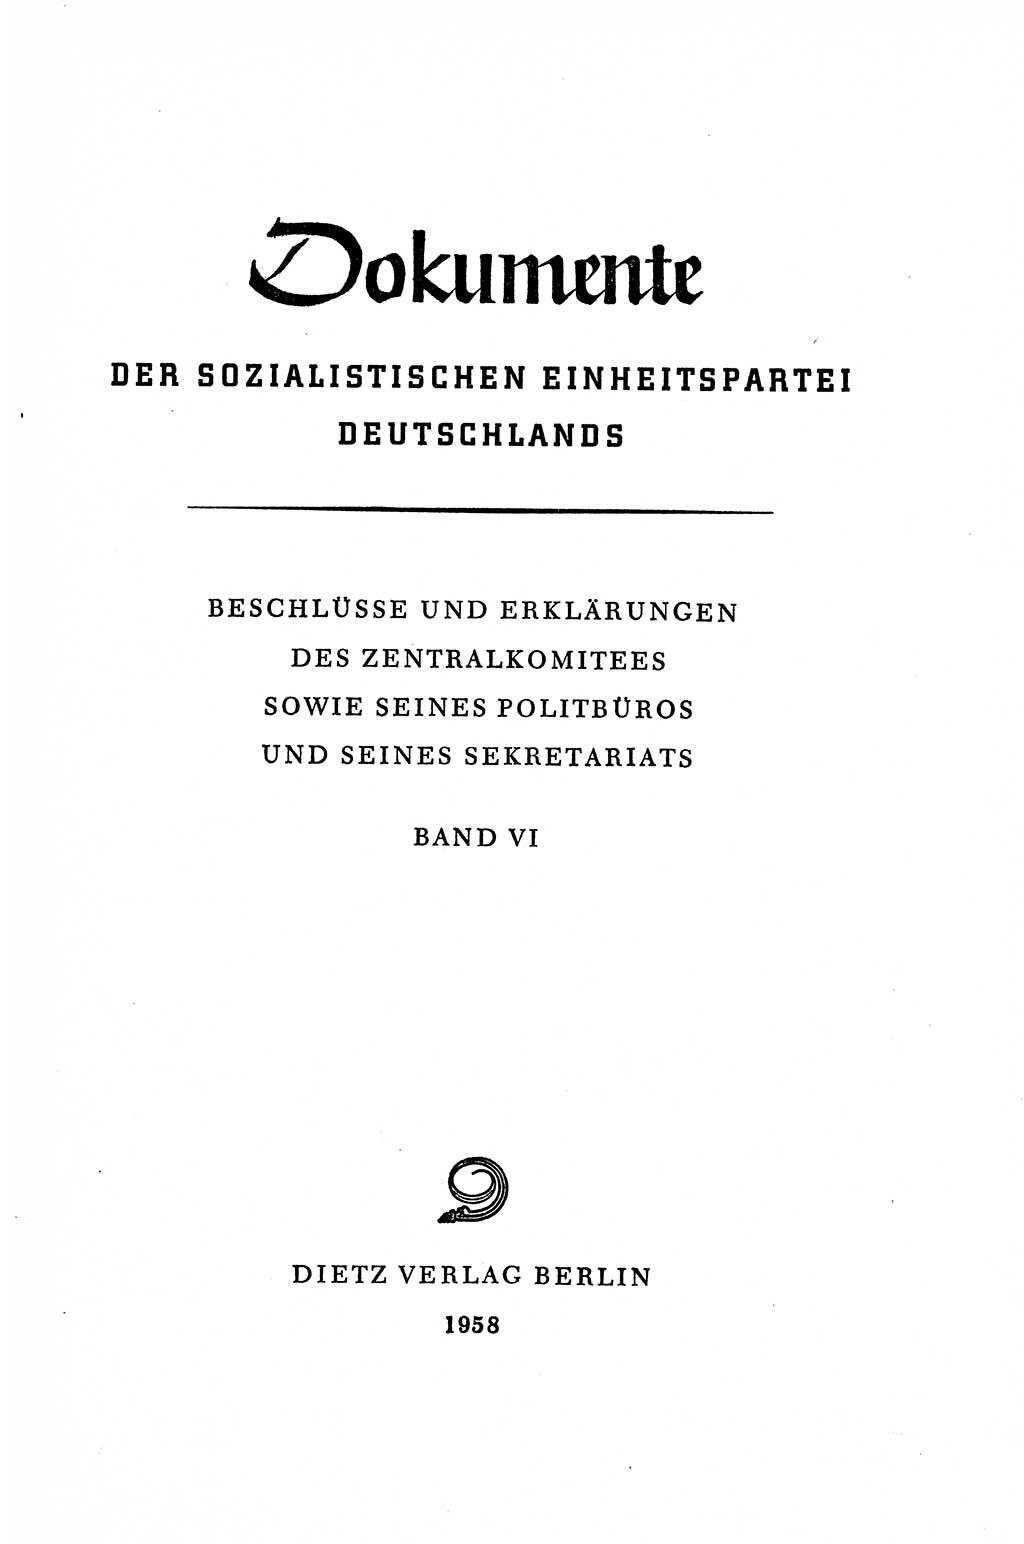 Dokumente der Sozialistischen Einheitspartei Deutschlands (SED) [Deutsche Demokratische Republik (DDR)] 1956-1957, Seite 3 (Dok. SED DDR 1956-1957, S. 3)